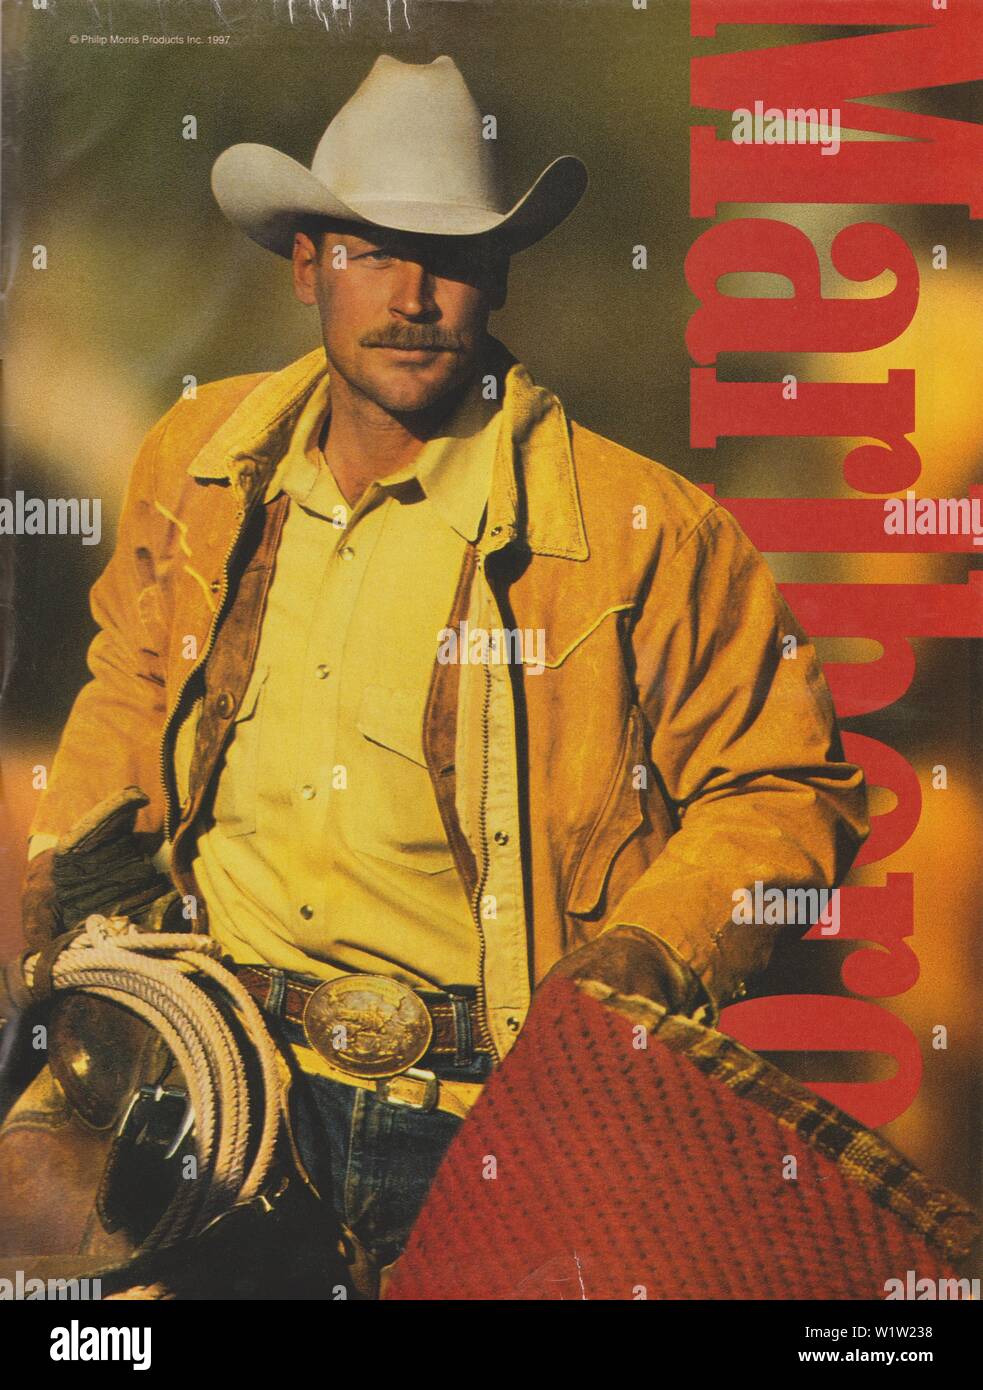 Plakat werbung Marlboro Zigaretten, Zeitschrift 1997, kein Slogan, kreative Werbung Marlboro von Philip Morris von 1990 s Stockfoto